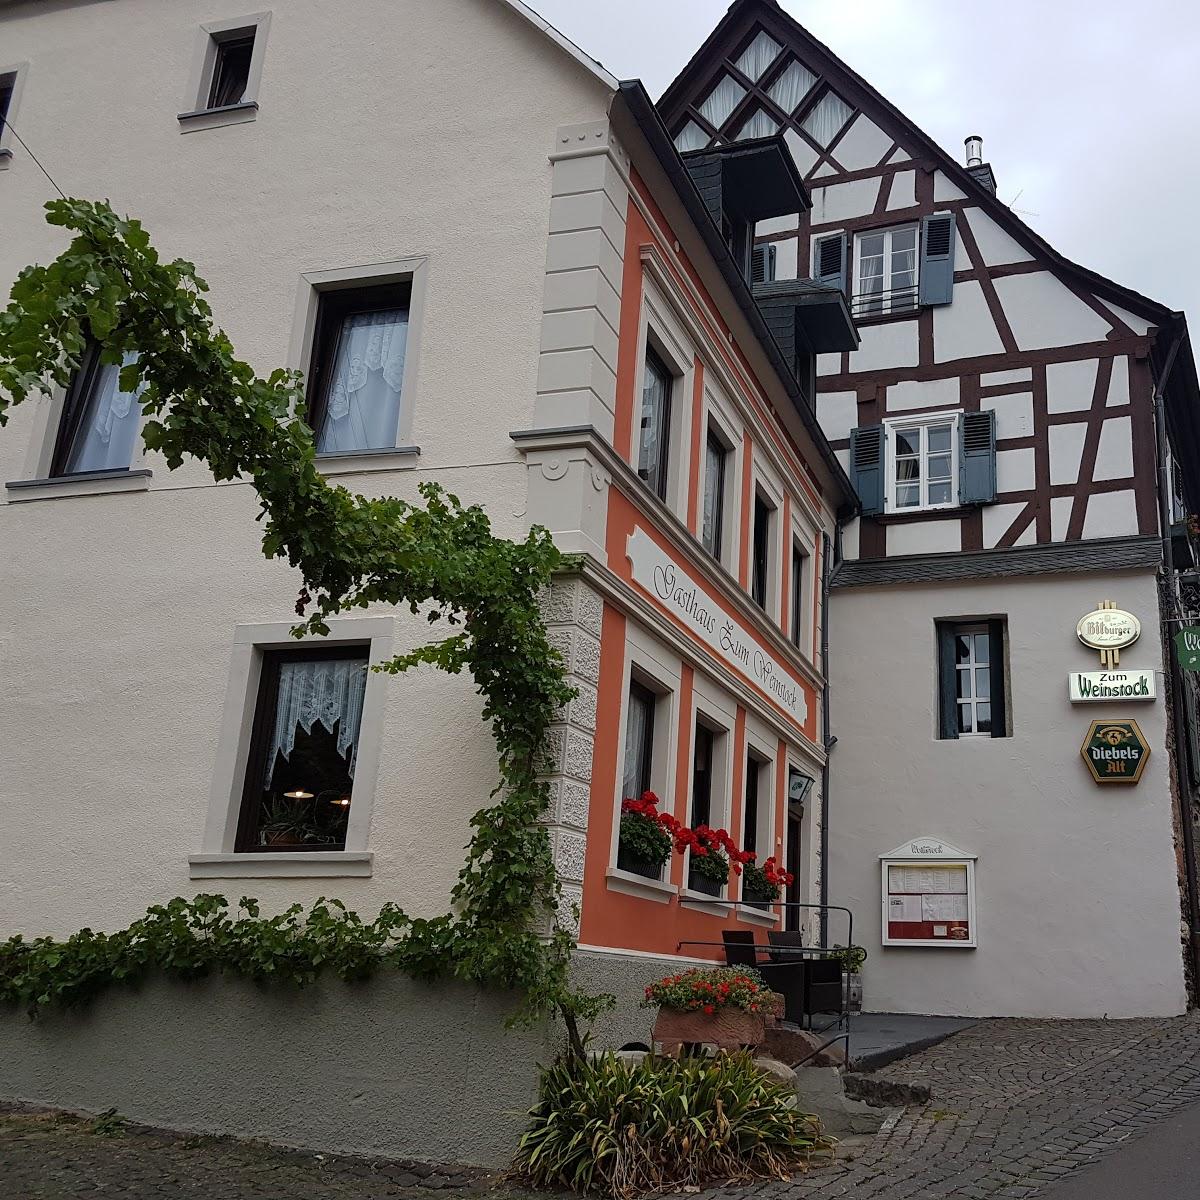 Restaurant "Zum Weinstock" in Enkirch